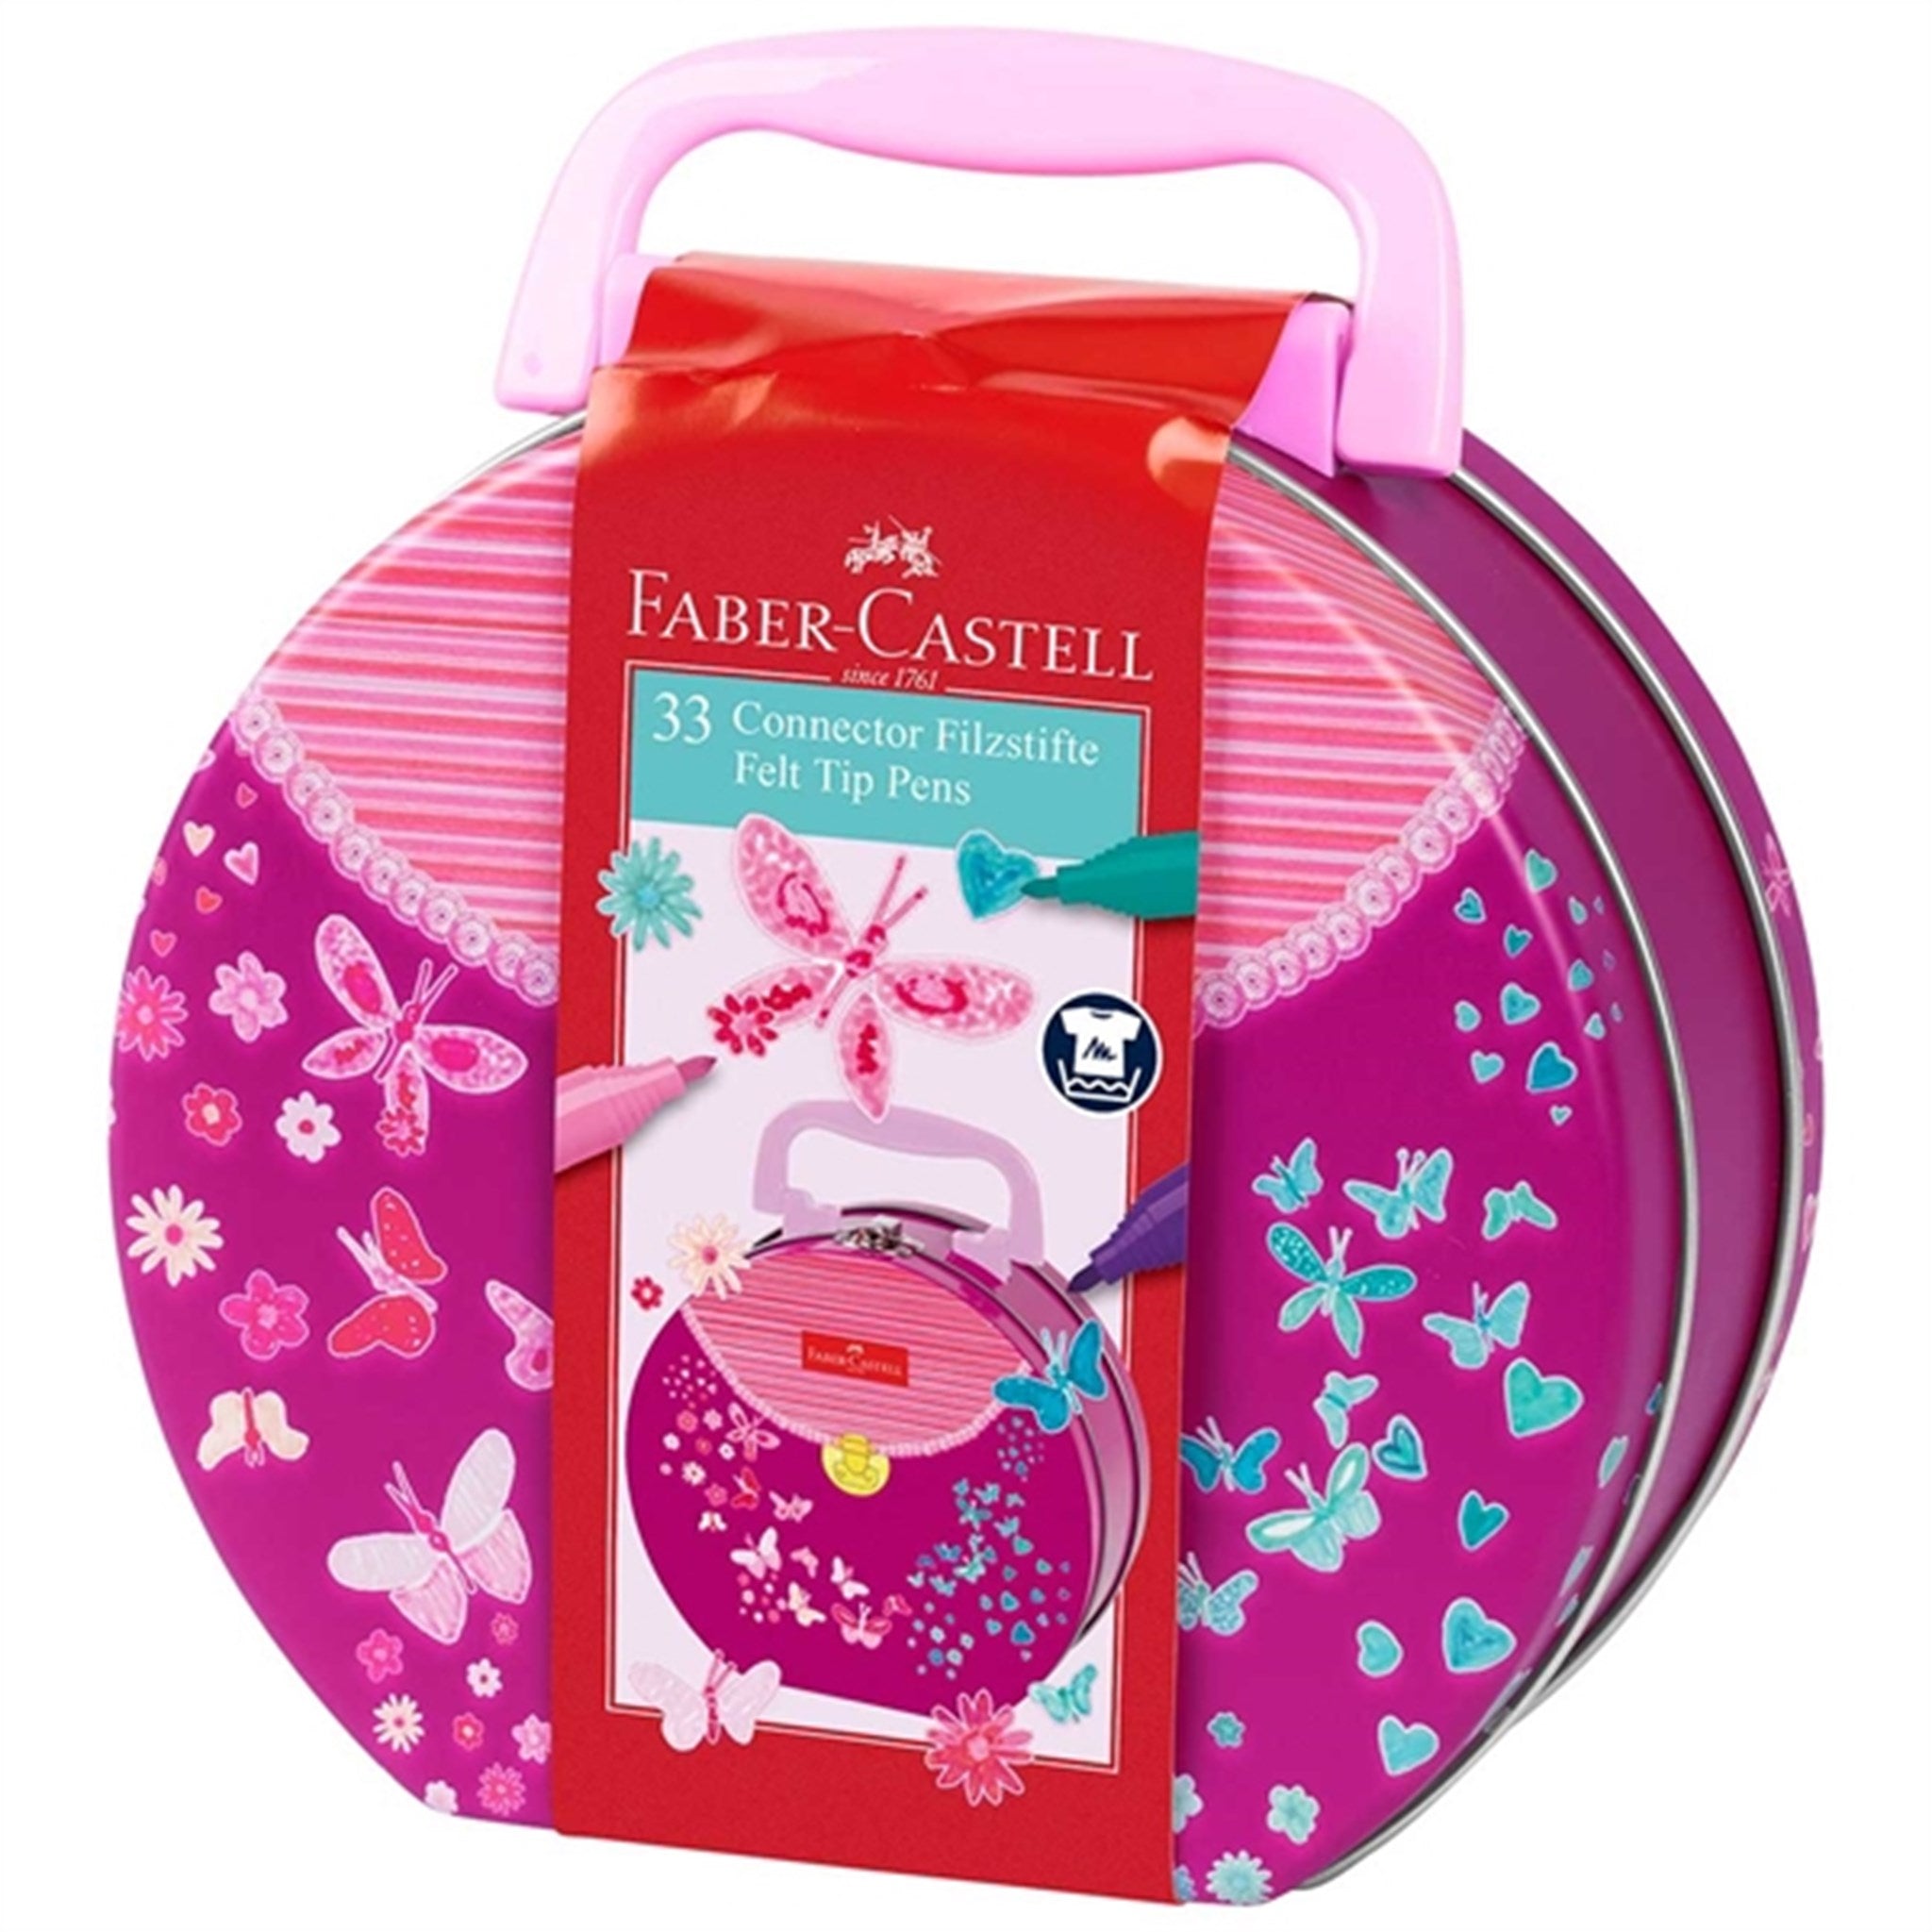 Faber-Castell Connector Felt Tip Pens Handbag